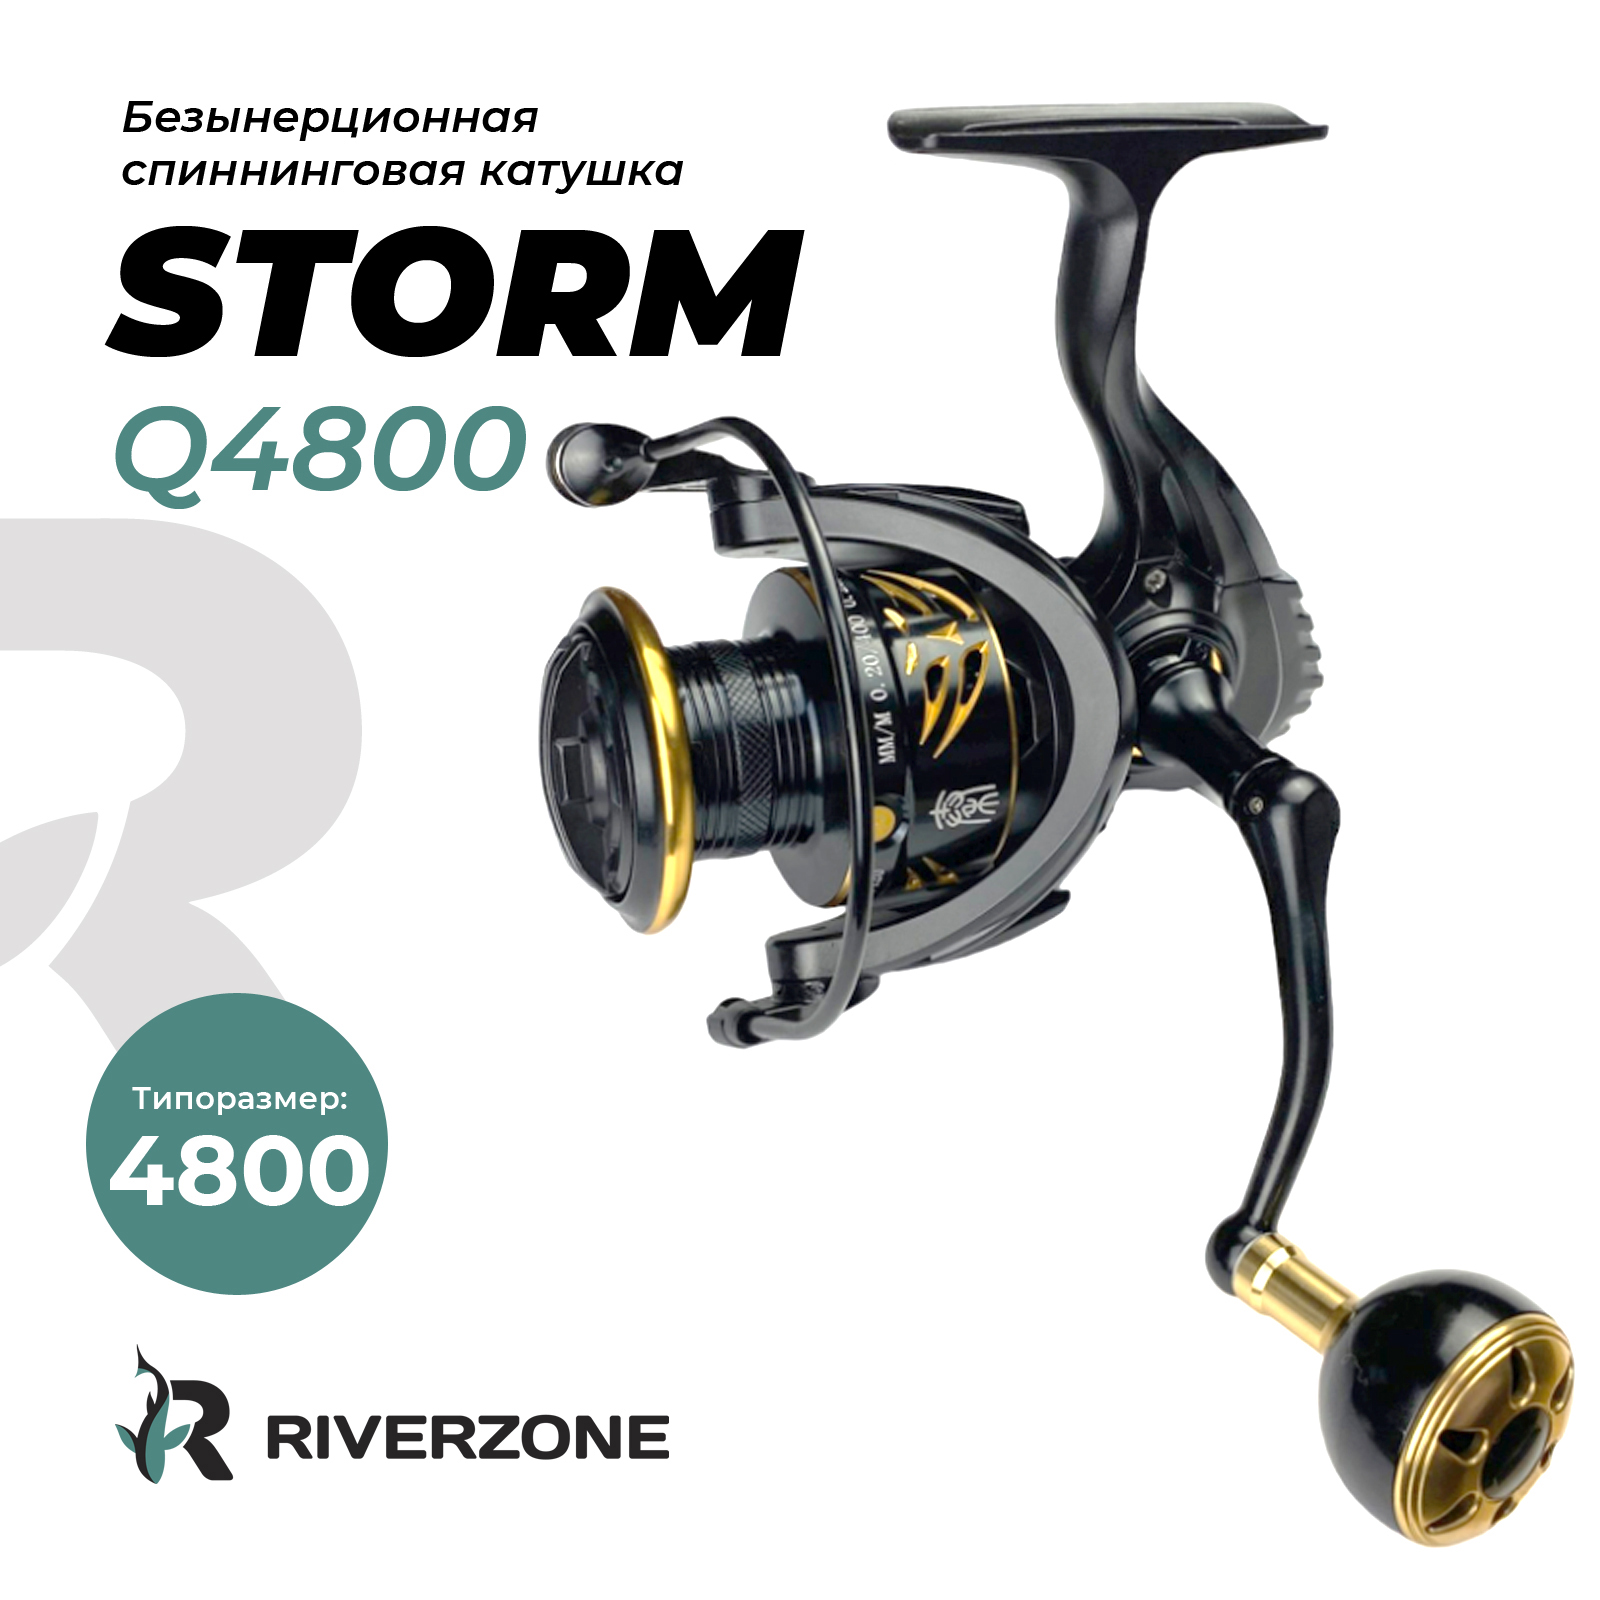 Катушка Riverzone Storm Q4800 - фото 1